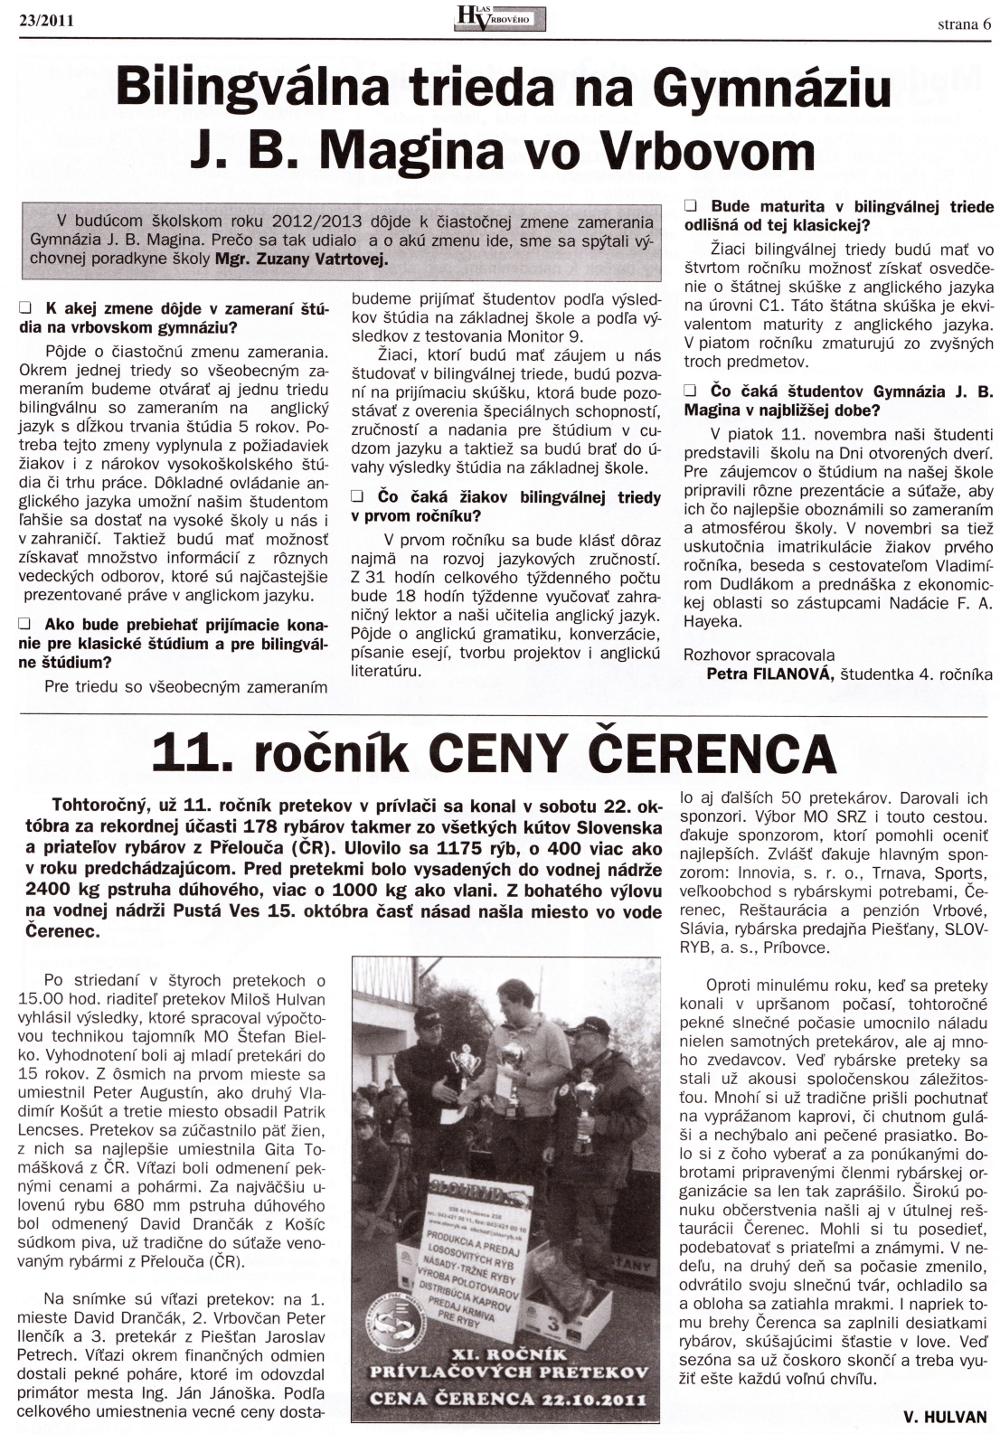 Hlas Vrbového 23/2011, strana 6